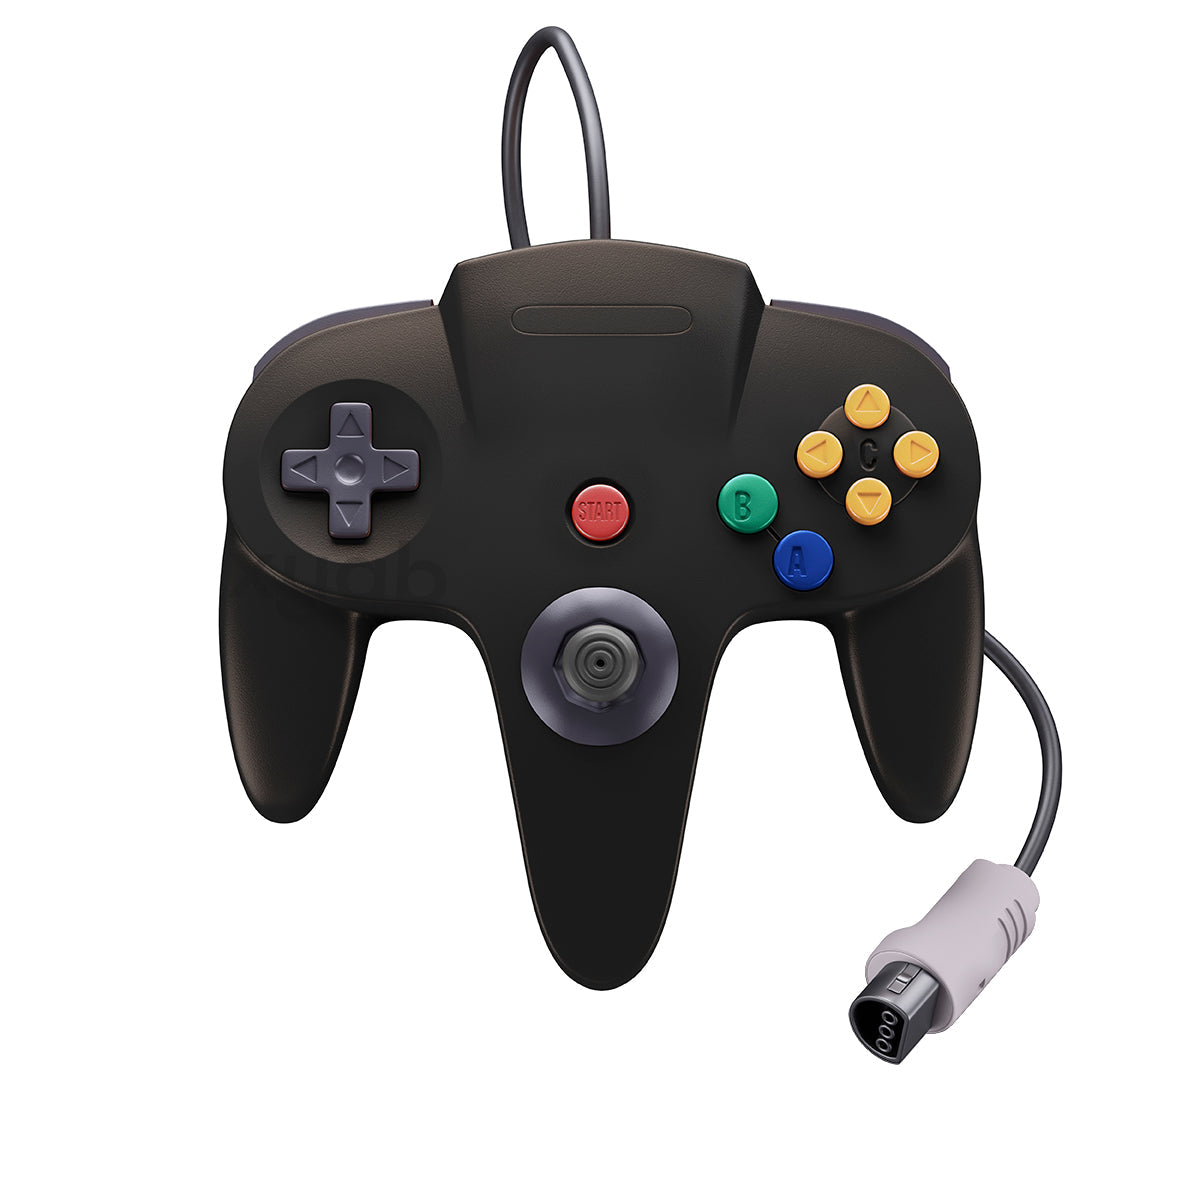 Nintendo 64 Controller - Black